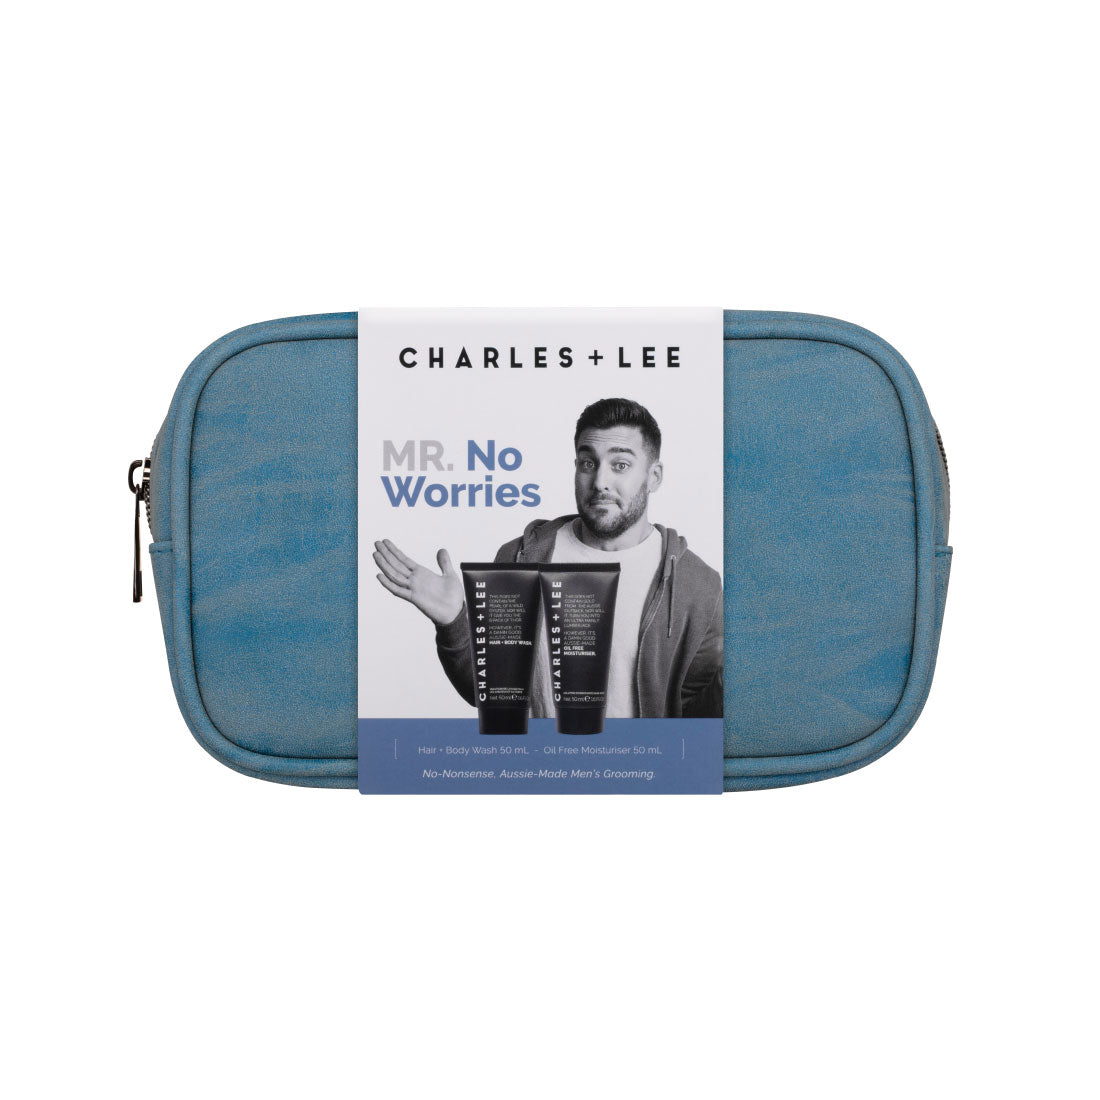 Charles + Lee Mr No Worries Gift Pack